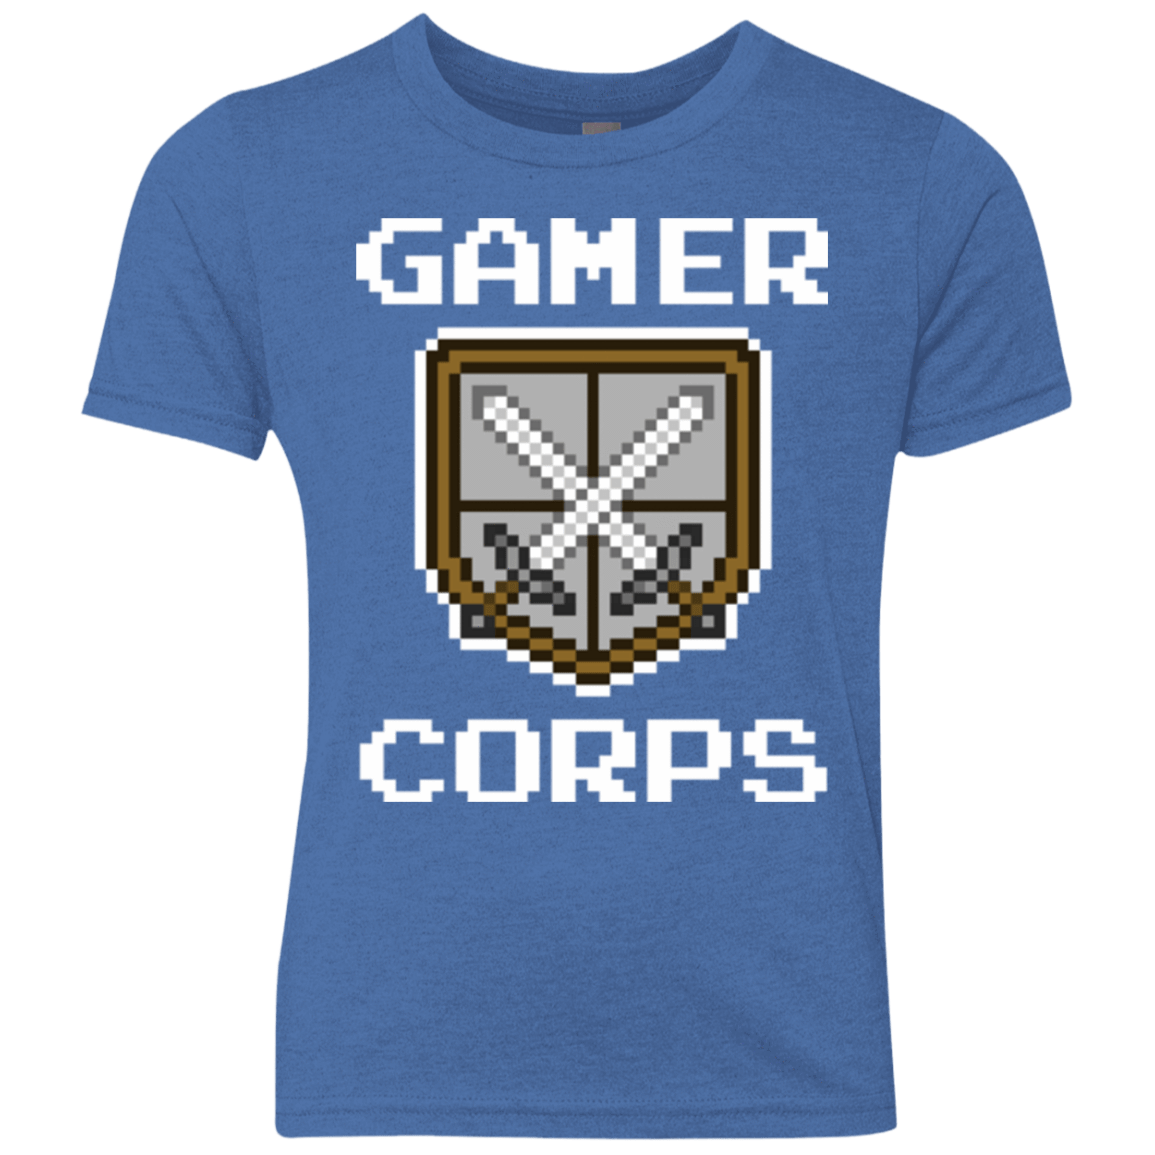 T-Shirts Vintage Royal / YXS Gamer corps Youth Triblend T-Shirt